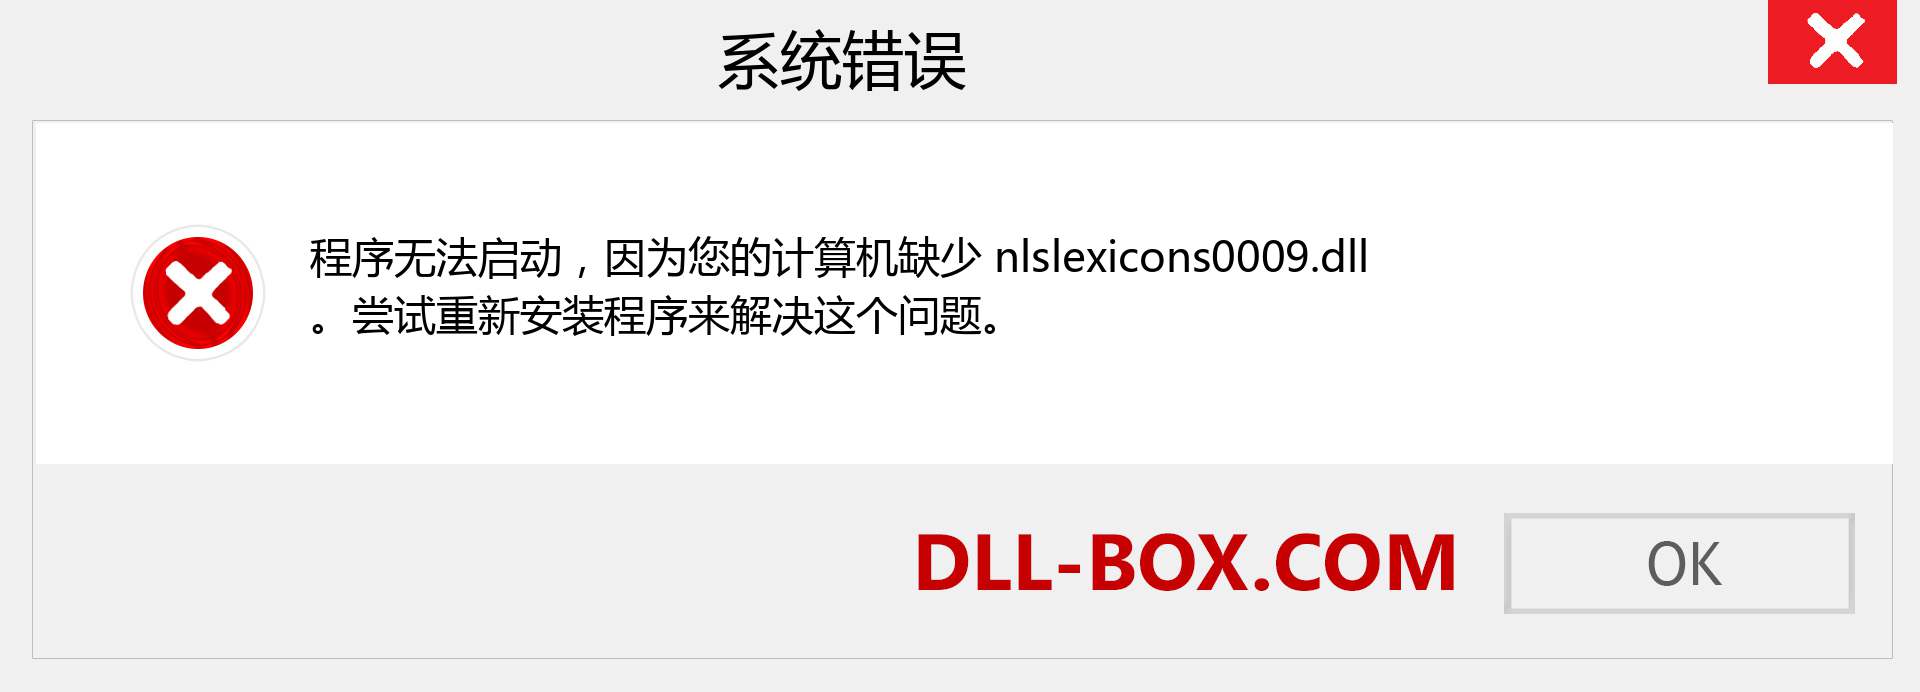 nlslexicons0009.dll 文件丢失？。 适用于 Windows 7、8、10 的下载 - 修复 Windows、照片、图像上的 nlslexicons0009 dll 丢失错误